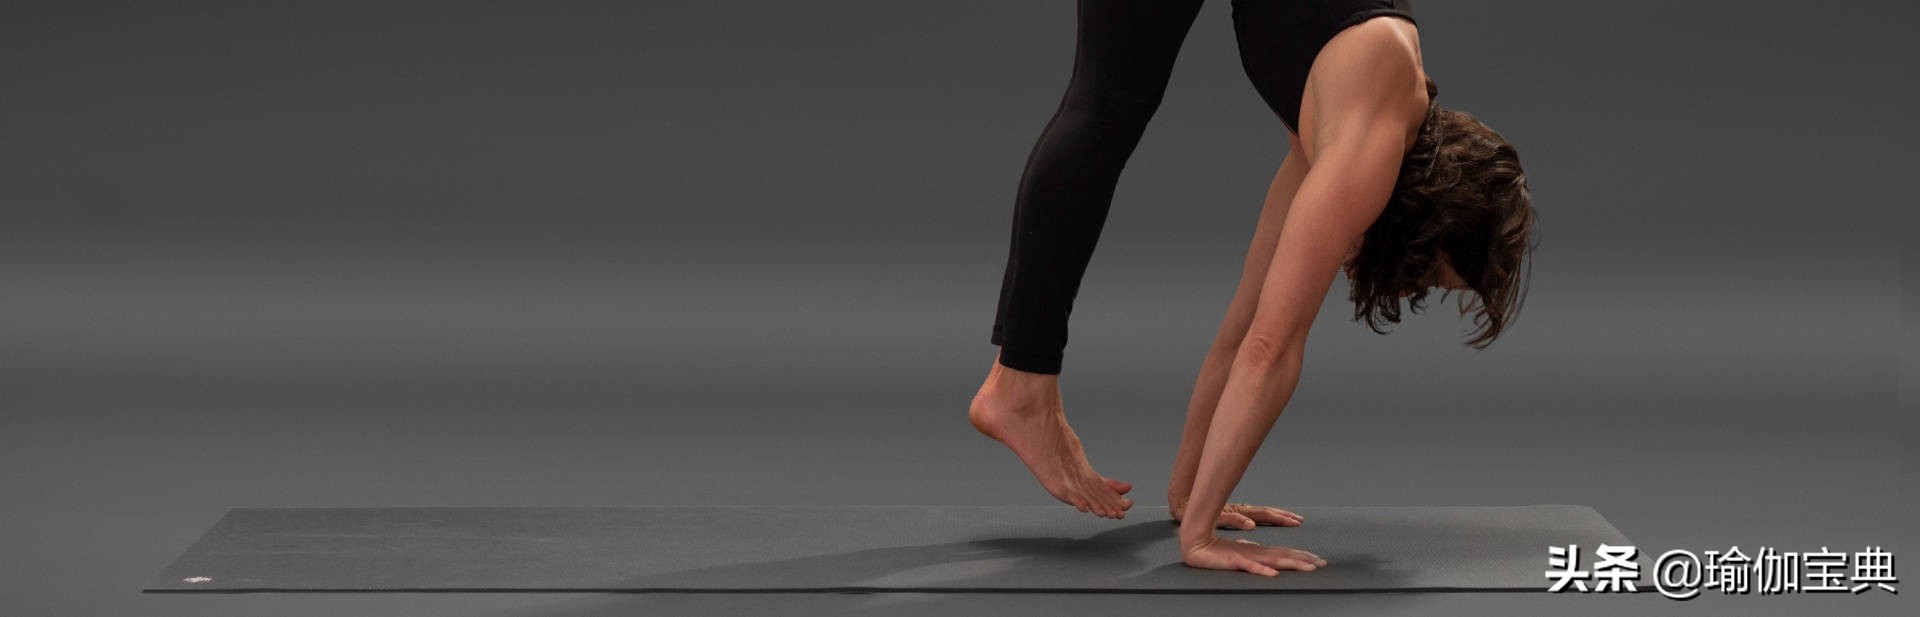 阿斯汤加瑜伽序列中如何轻松 无缝和平滑穿越 发展整个上半身的力量